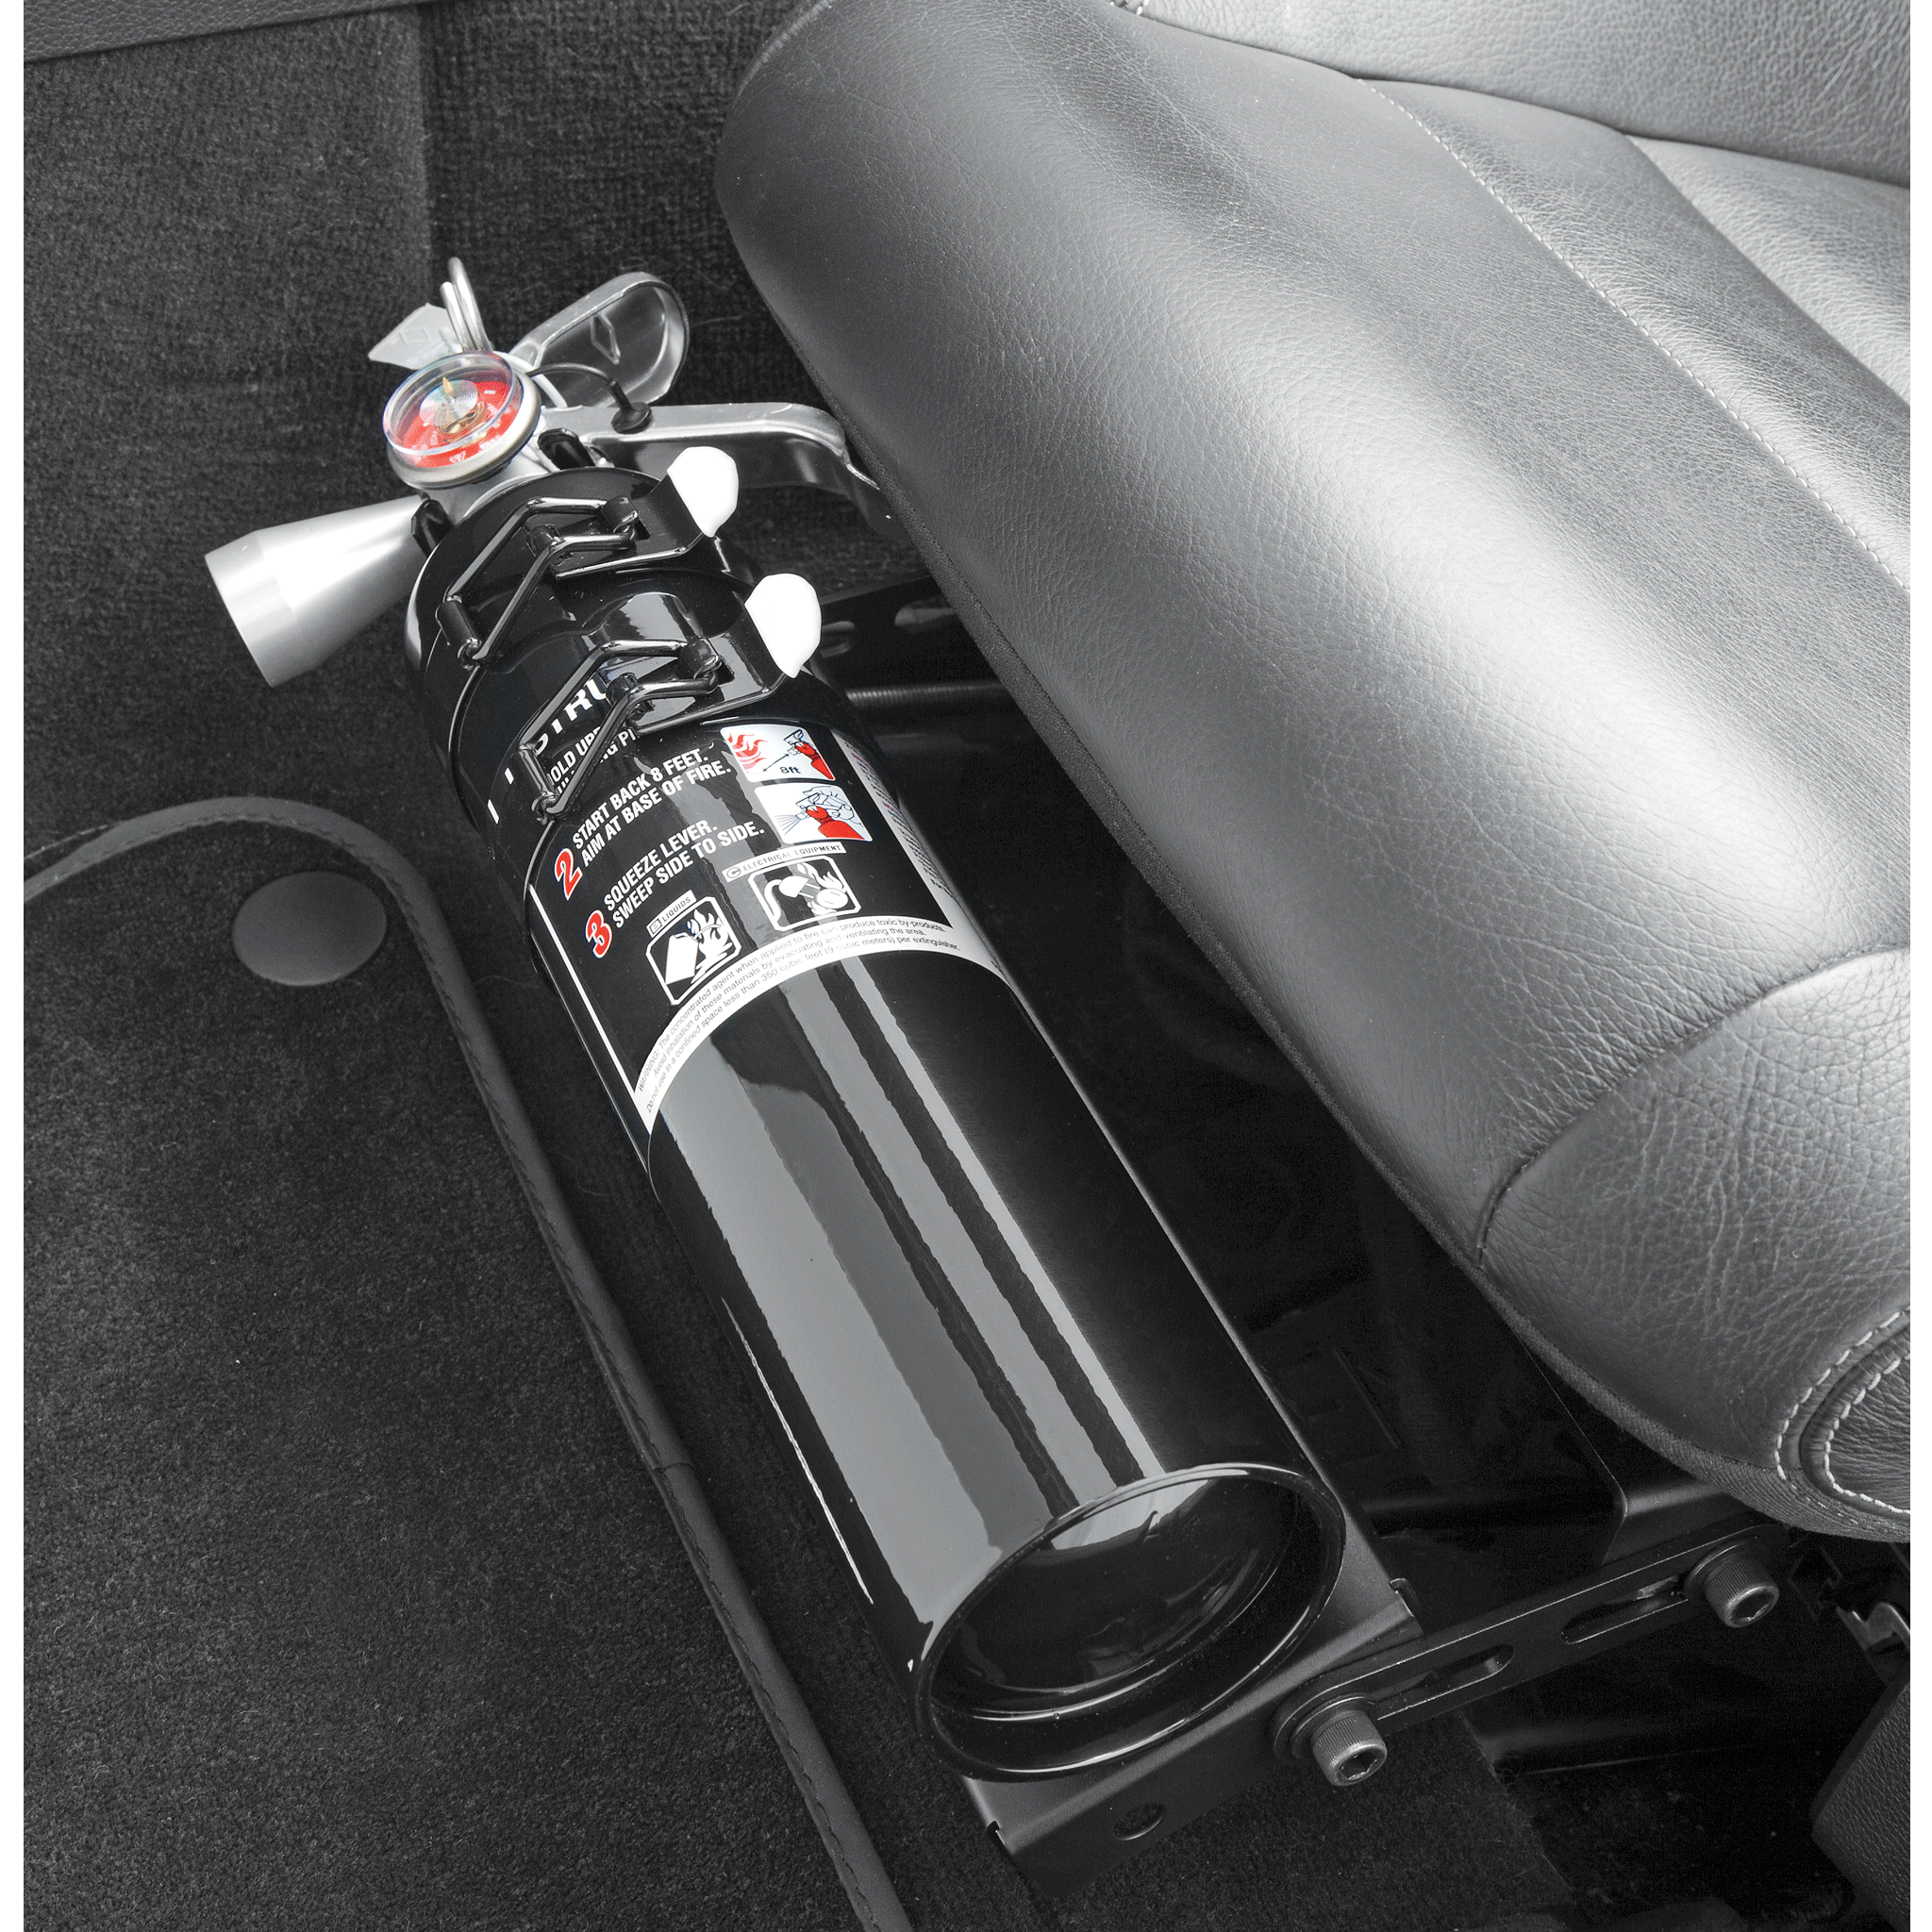 HalGuard Clean Agent Car Fire Extinguisher - 1.4 lb.